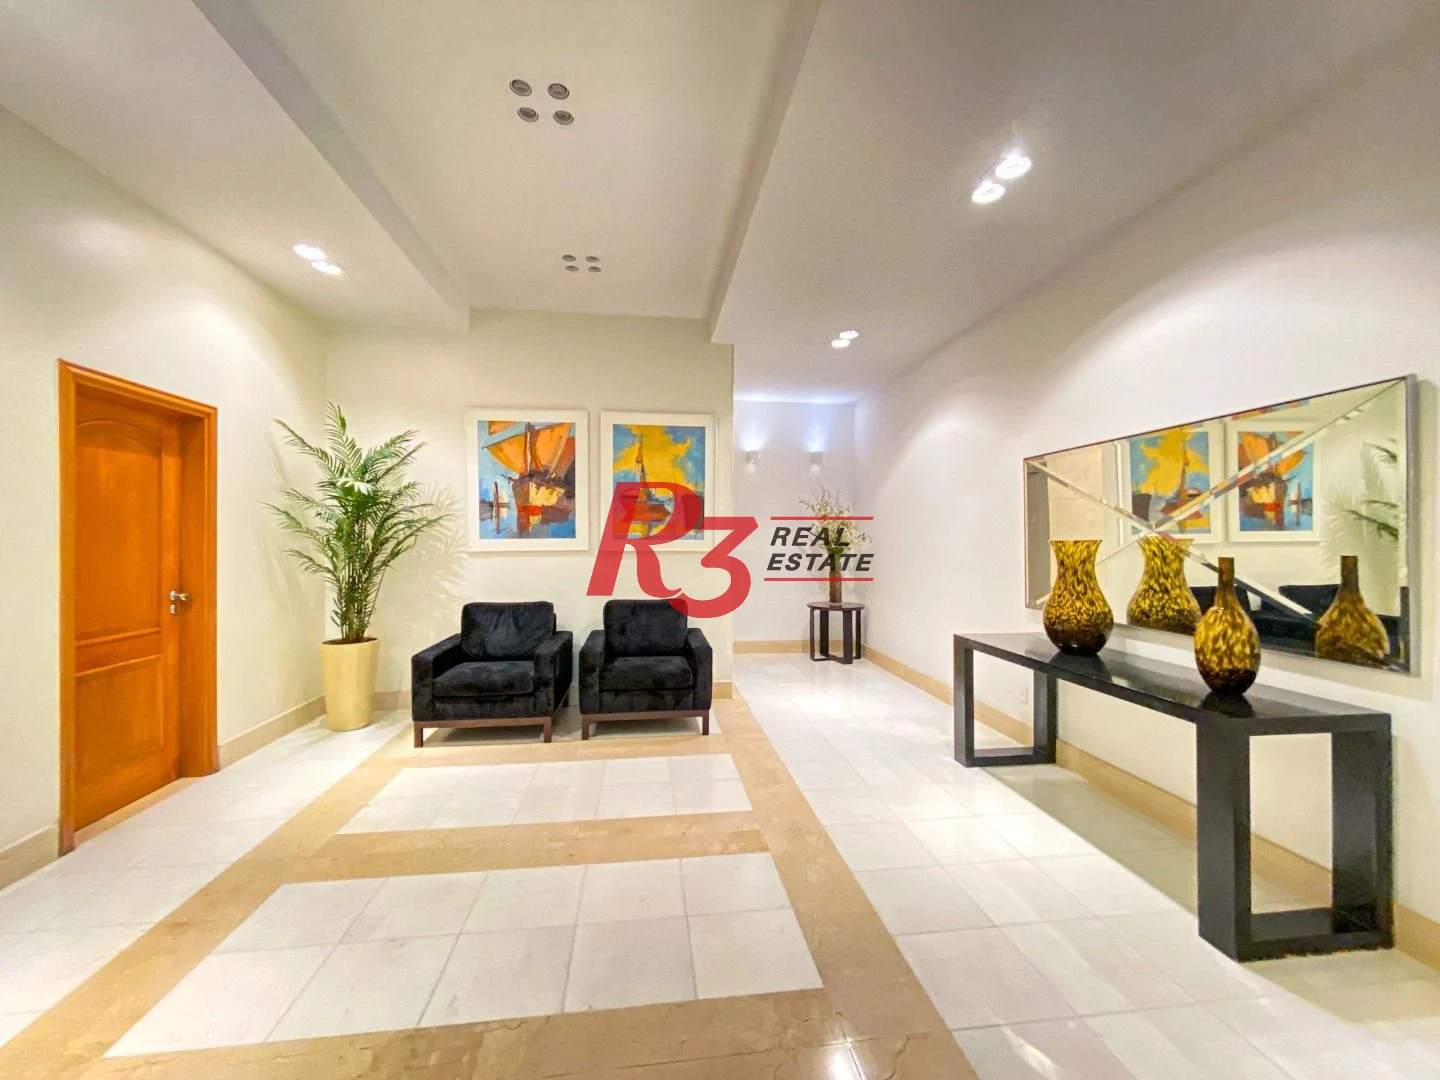 Apartamento Garden com 4 dormitórios à venda, 330 m² por R$ 3.890.000,00 - Aparecida - Santos/SP